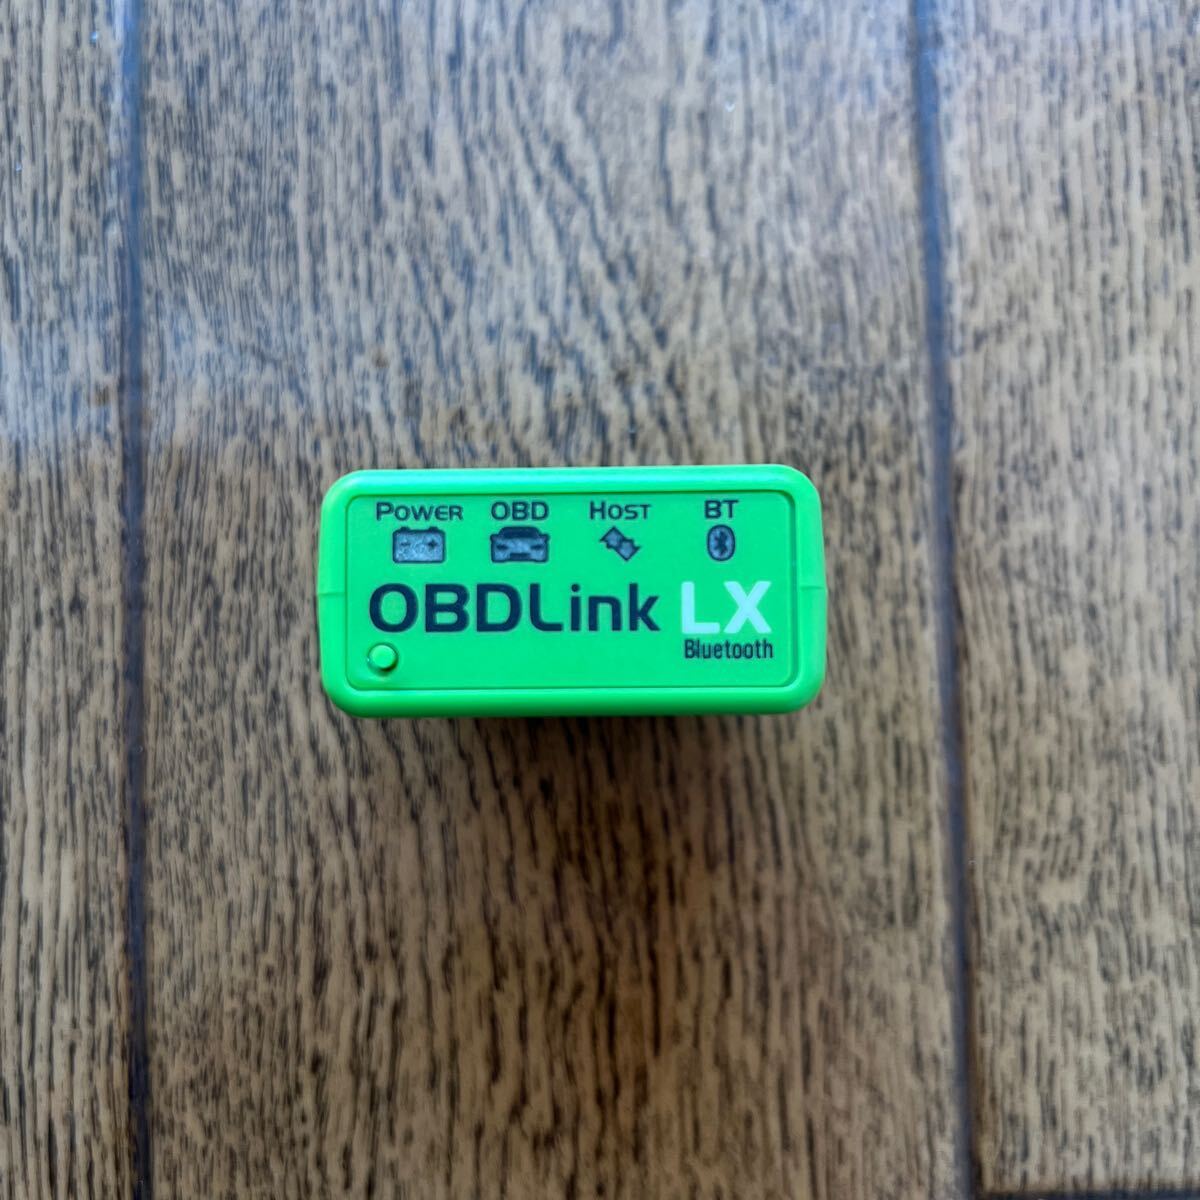  дешевый старт!OBDLink LX..